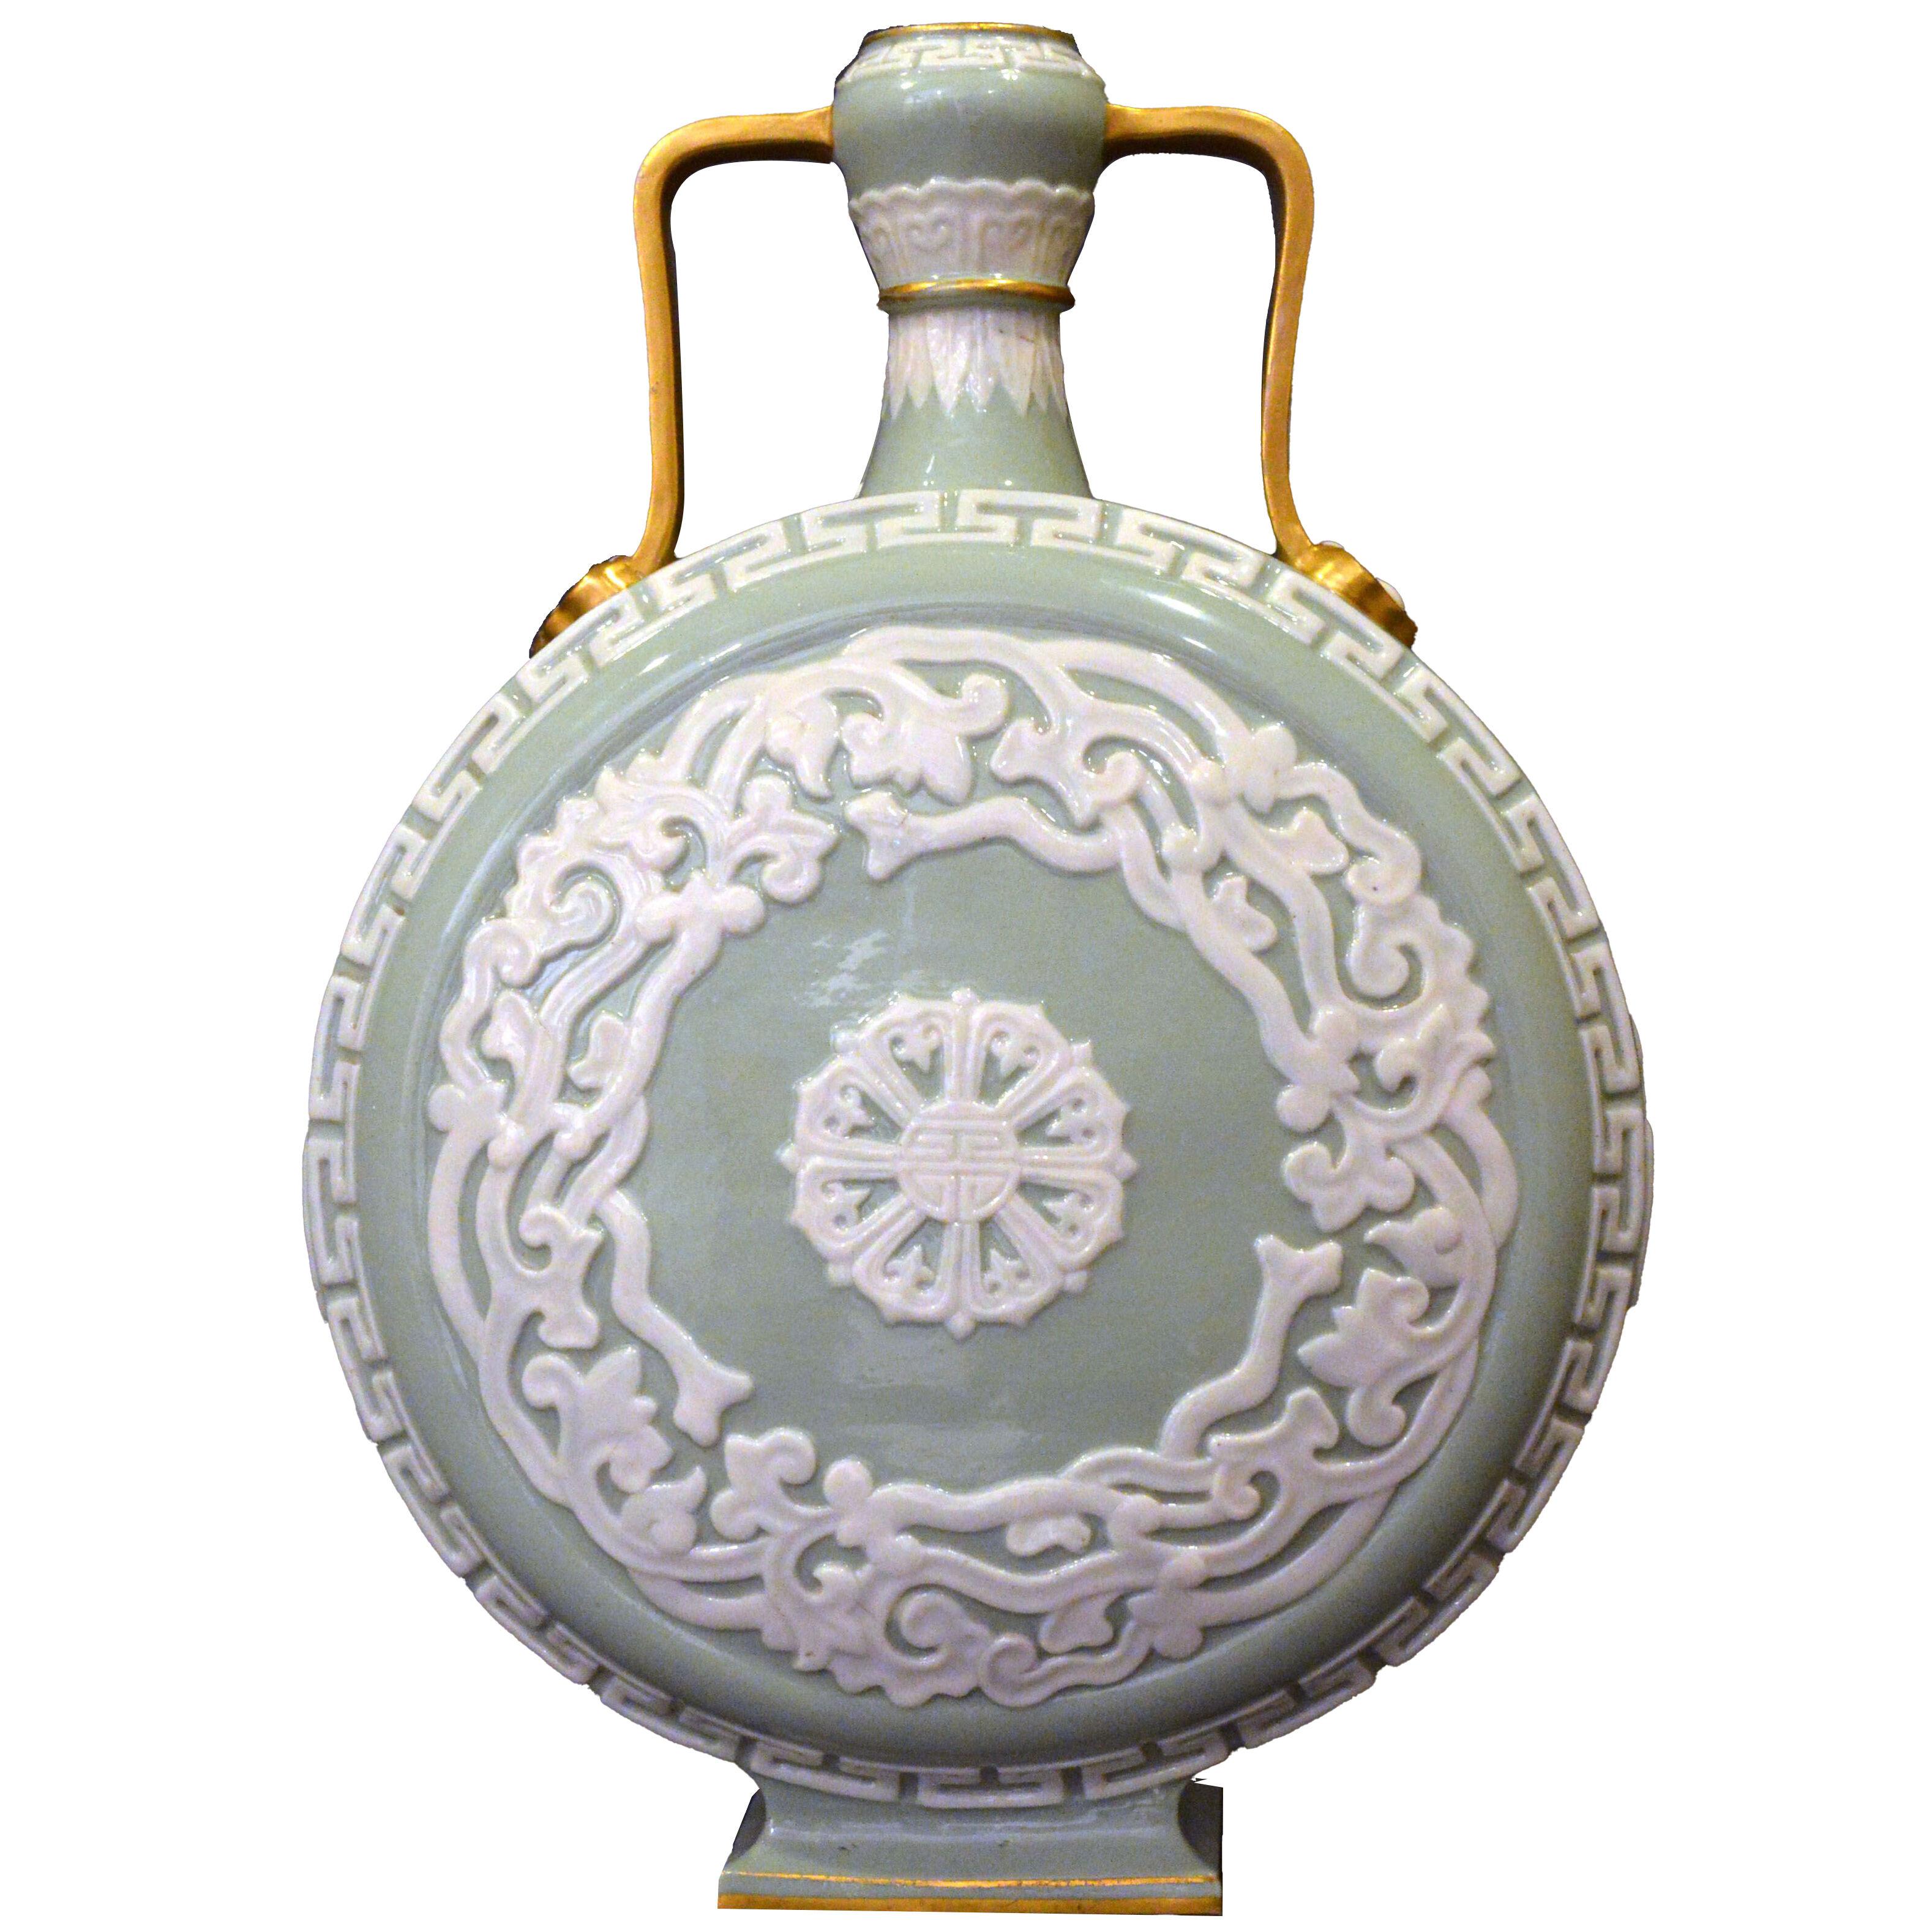 Royal Worcester Porcelain Moon Flask